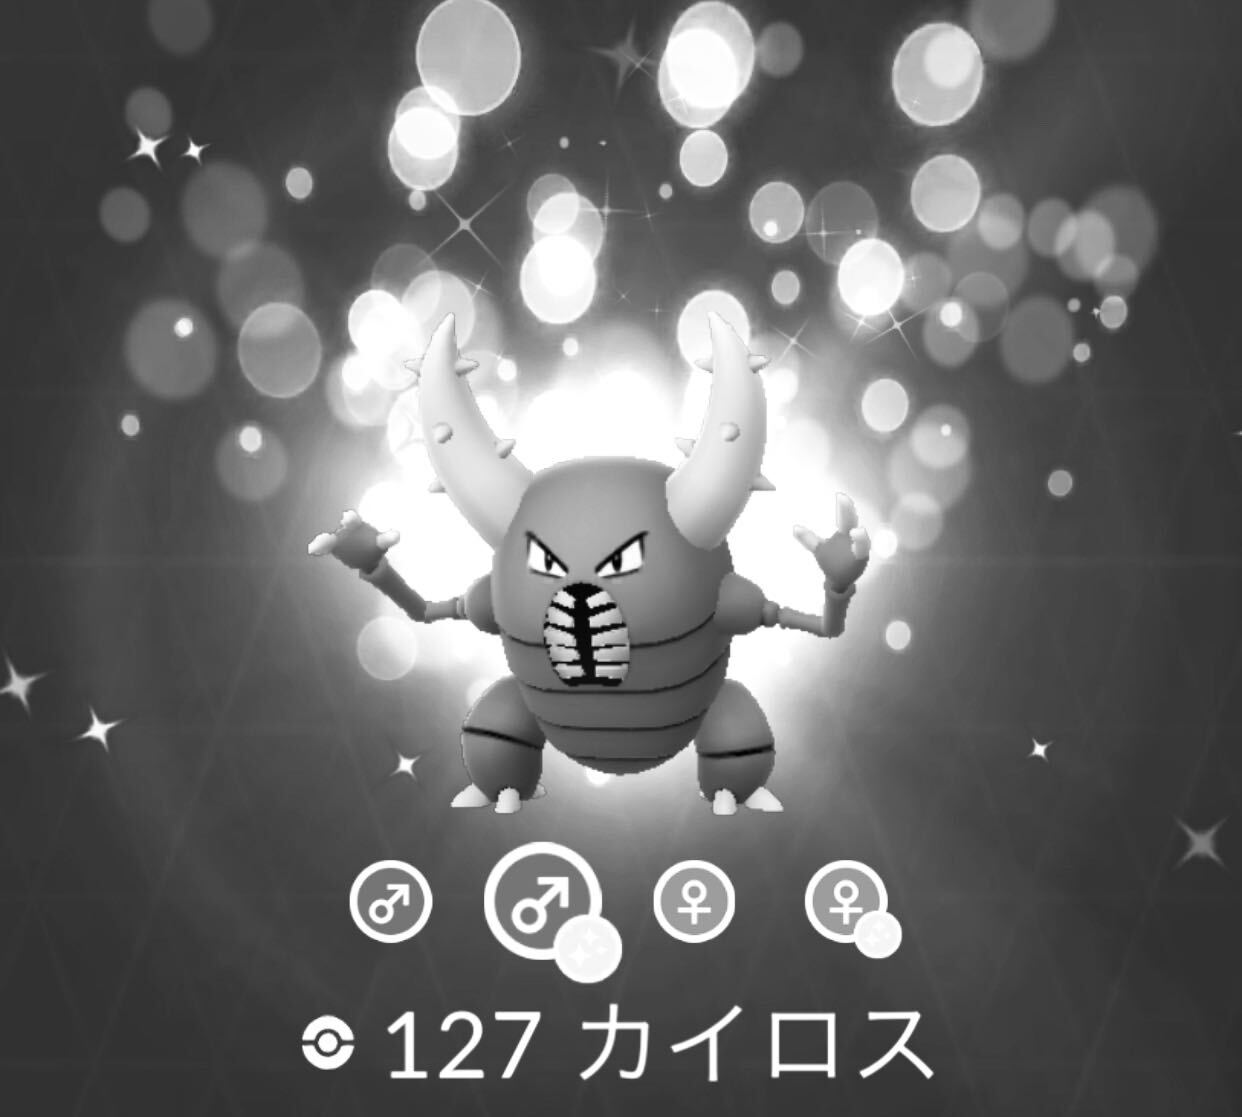 ポケモンgo カイロス悲願のレイドデーイベントが開催中止 Engadget 日本版